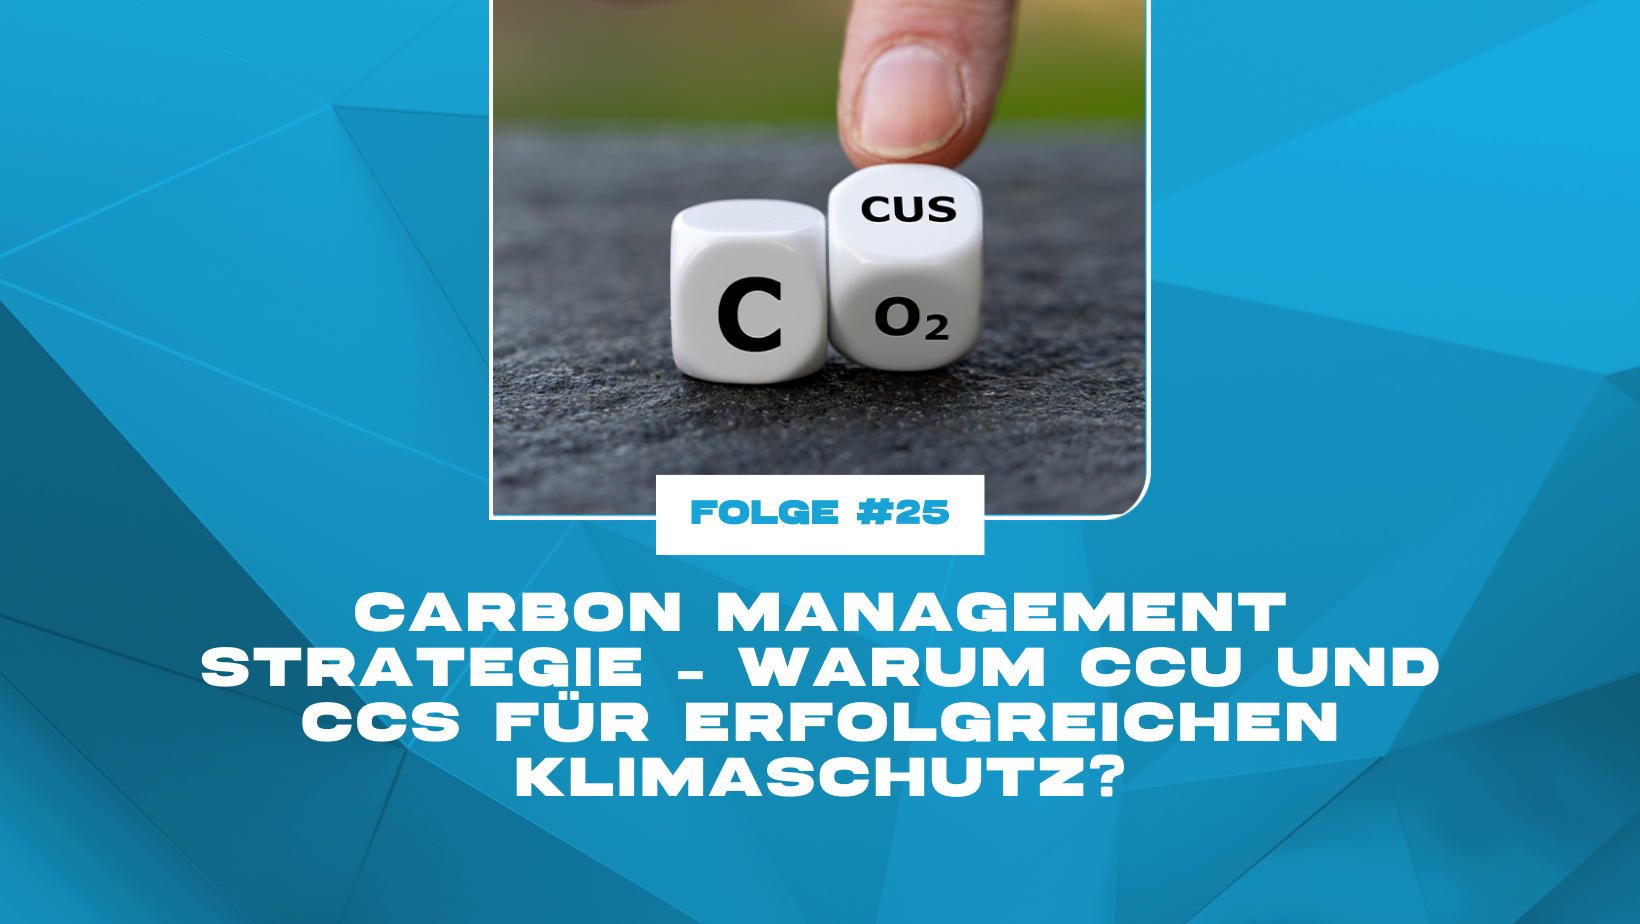 Carbon Management Strategie – Warum CCU und CCS für erfolgreichen Klimaschutz?